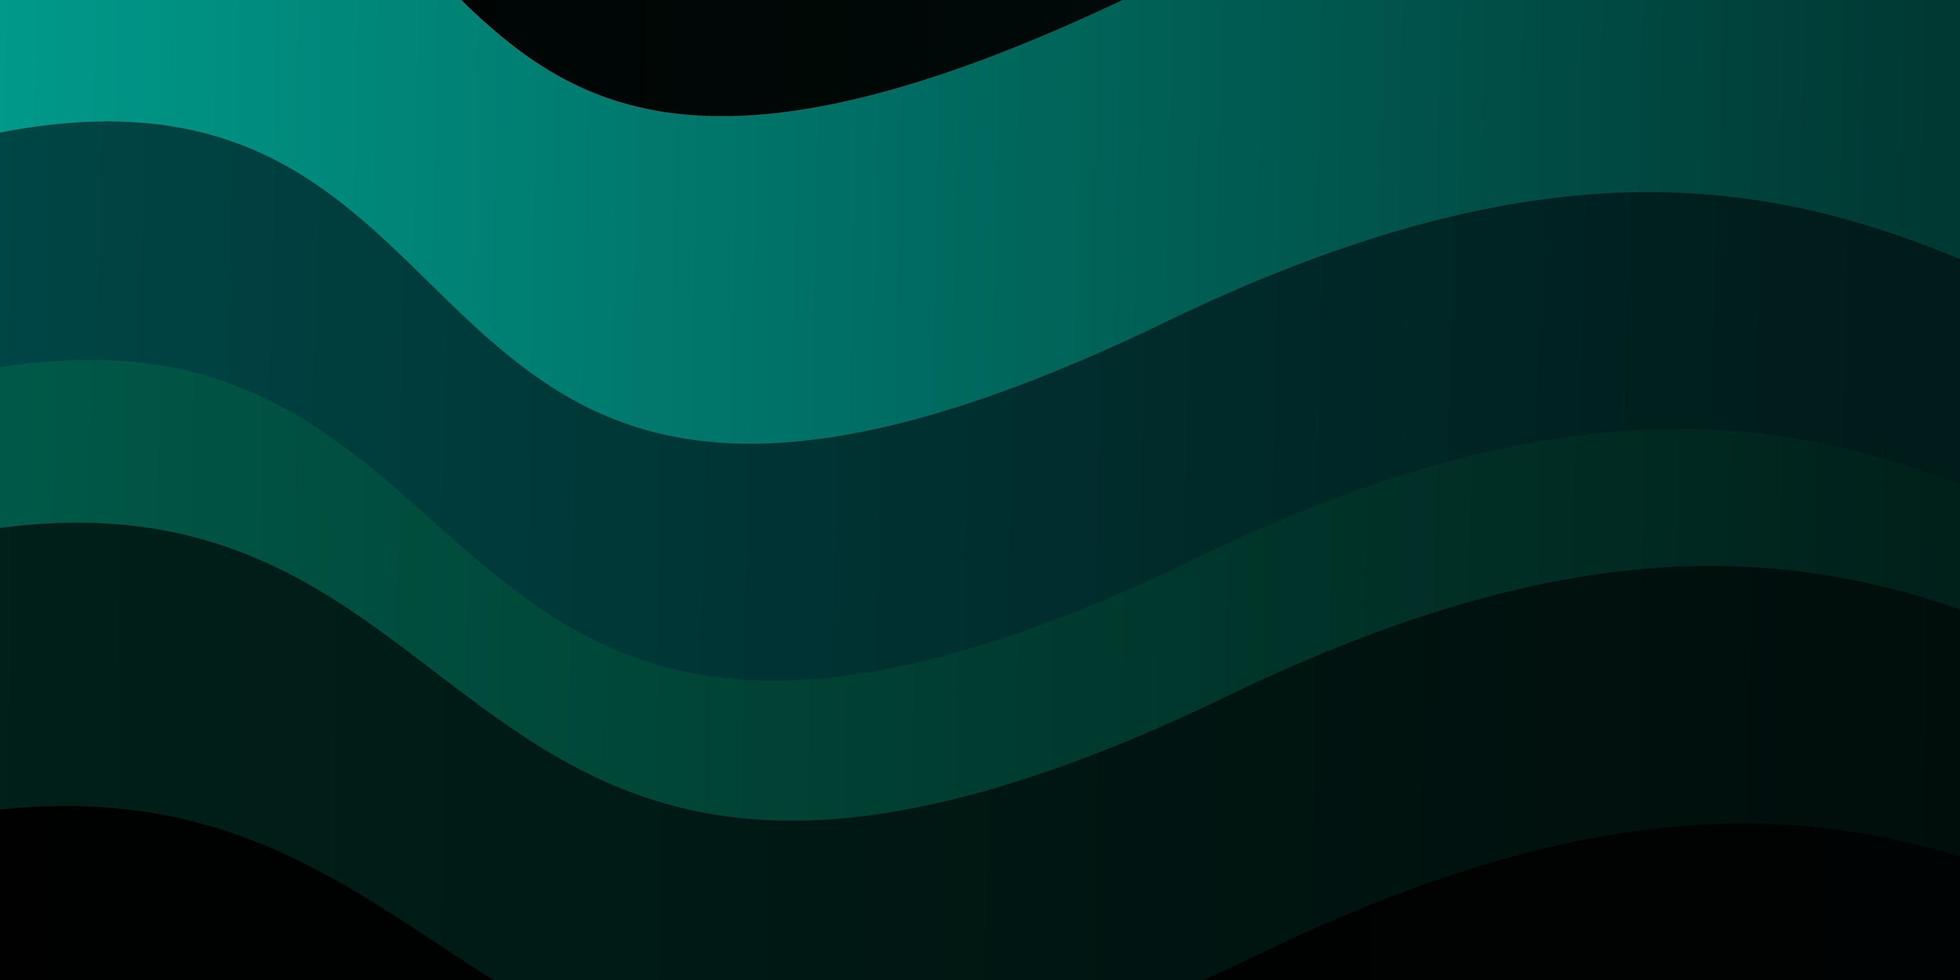 plantilla de vector azul oscuro, verde con líneas curvas. nueva ilustración colorida con líneas dobladas. plantilla para su diseño de interfaz de usuario.